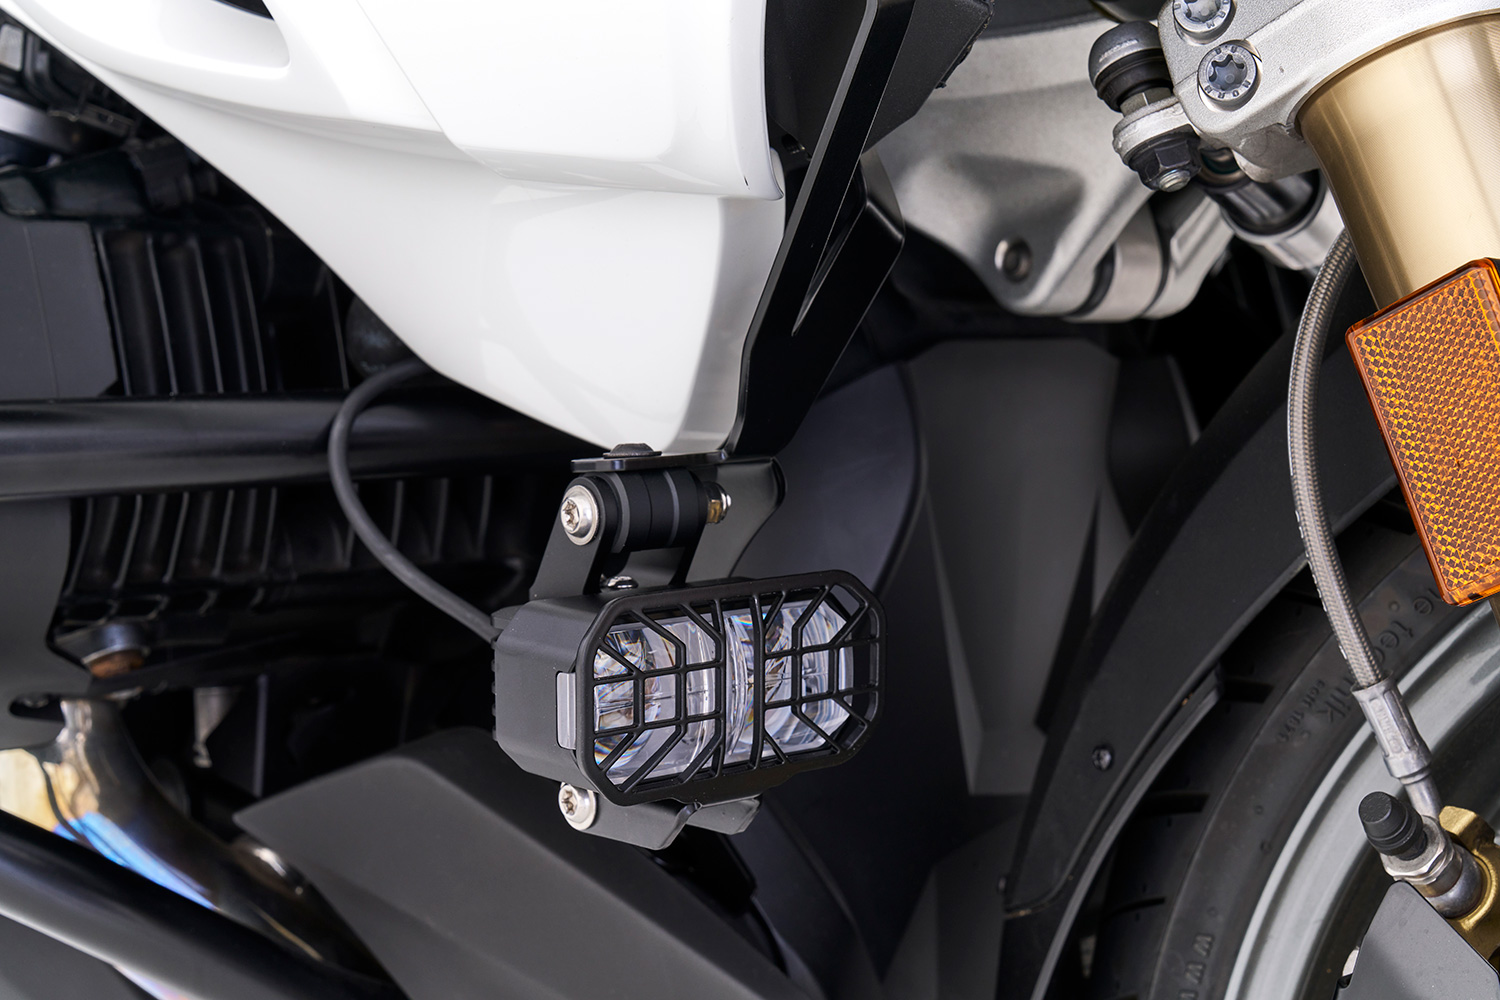 KABELBAUM Kit für LED Zusatzscheinwerfer BMW R 1200GS schwarz oder